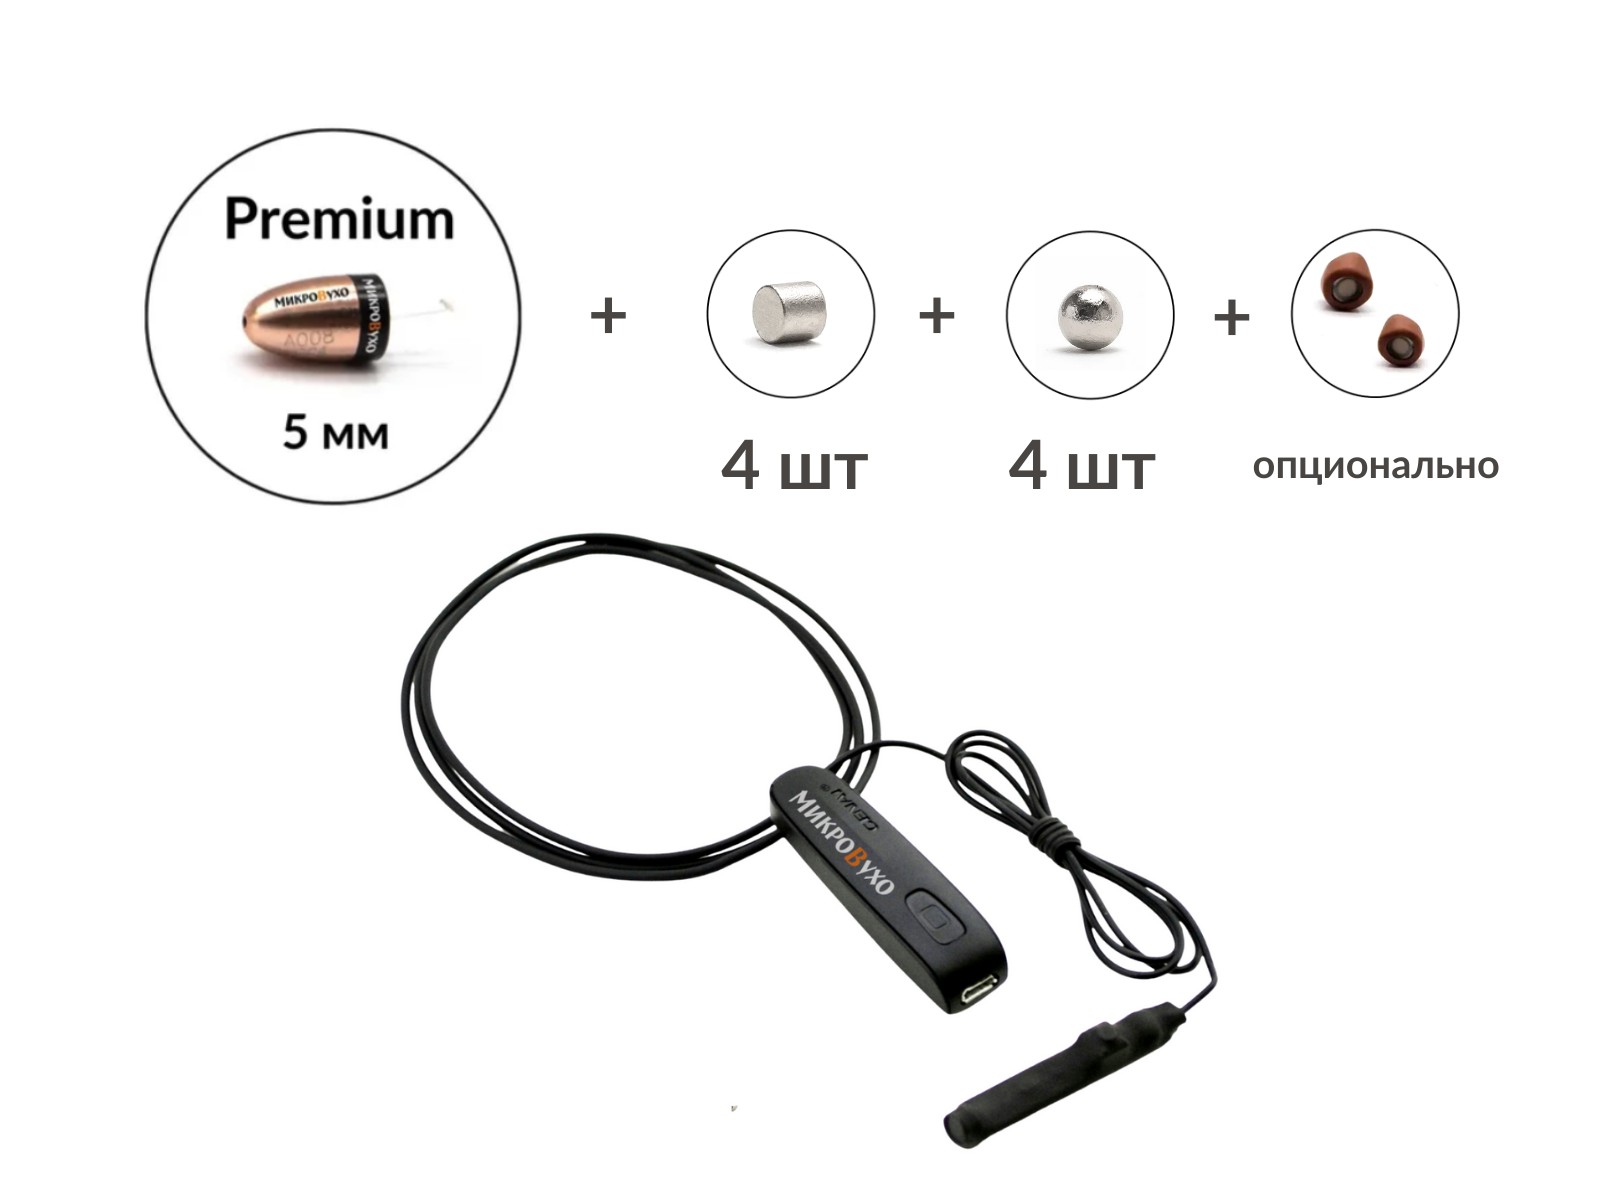 Универсальная гарнитура Bluetooth Basic с капсулой Premium и магнитами 2 мм - изображение 2